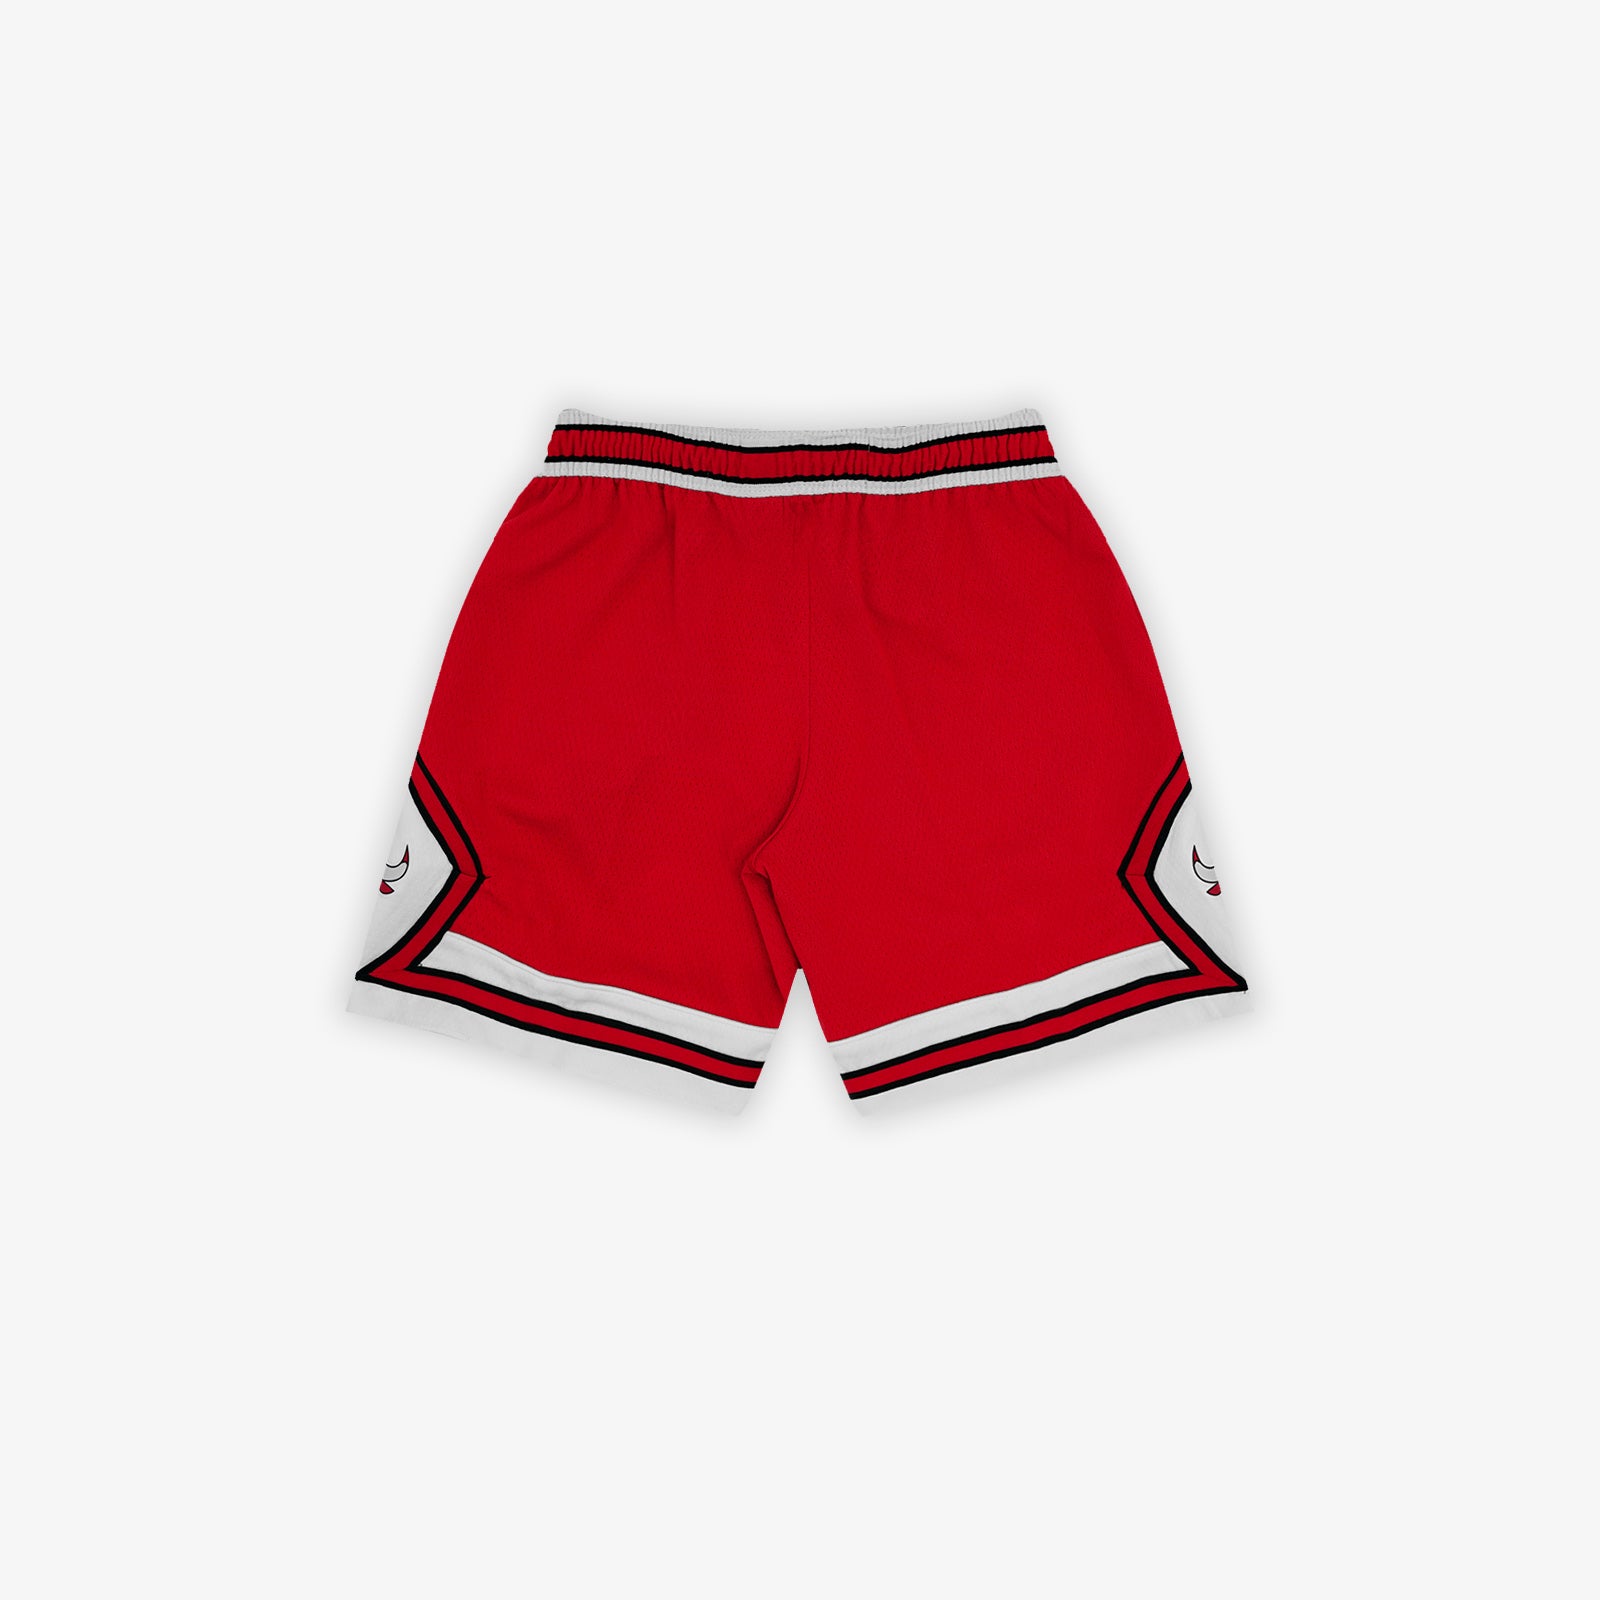 chicago jordan shorts